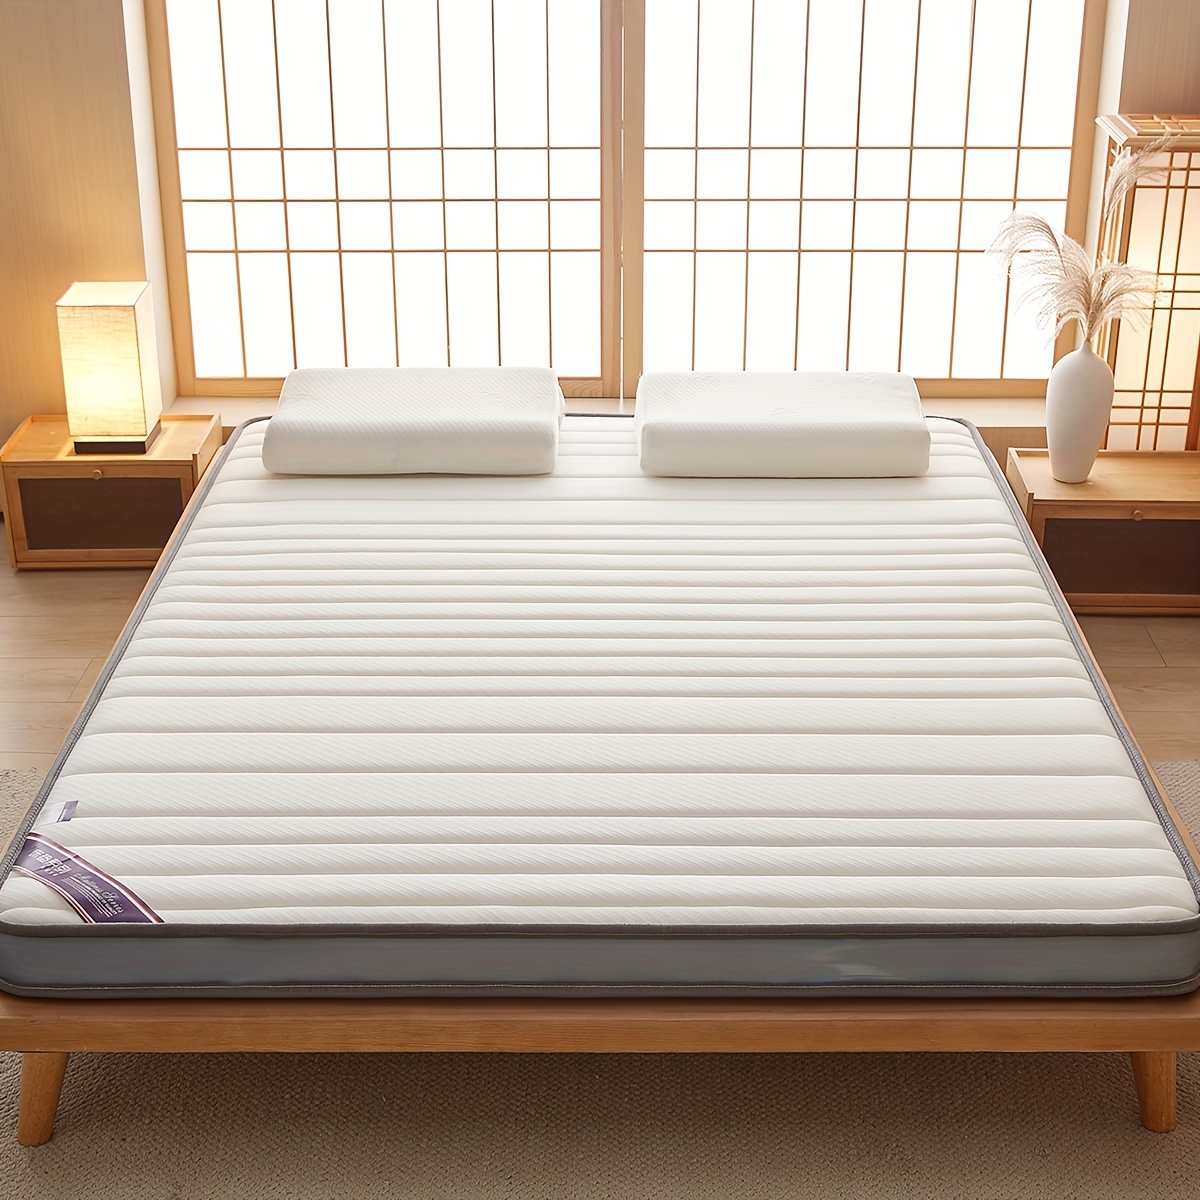  Colchón grueso de espuma viscoelástica para tatami,  hipoalergénico, para colchón, colchón, colchón, colchón, colchón, colchoneta,  colchoneta para campamento, cama de invitados, espuma de látex : Hogar y  Cocina